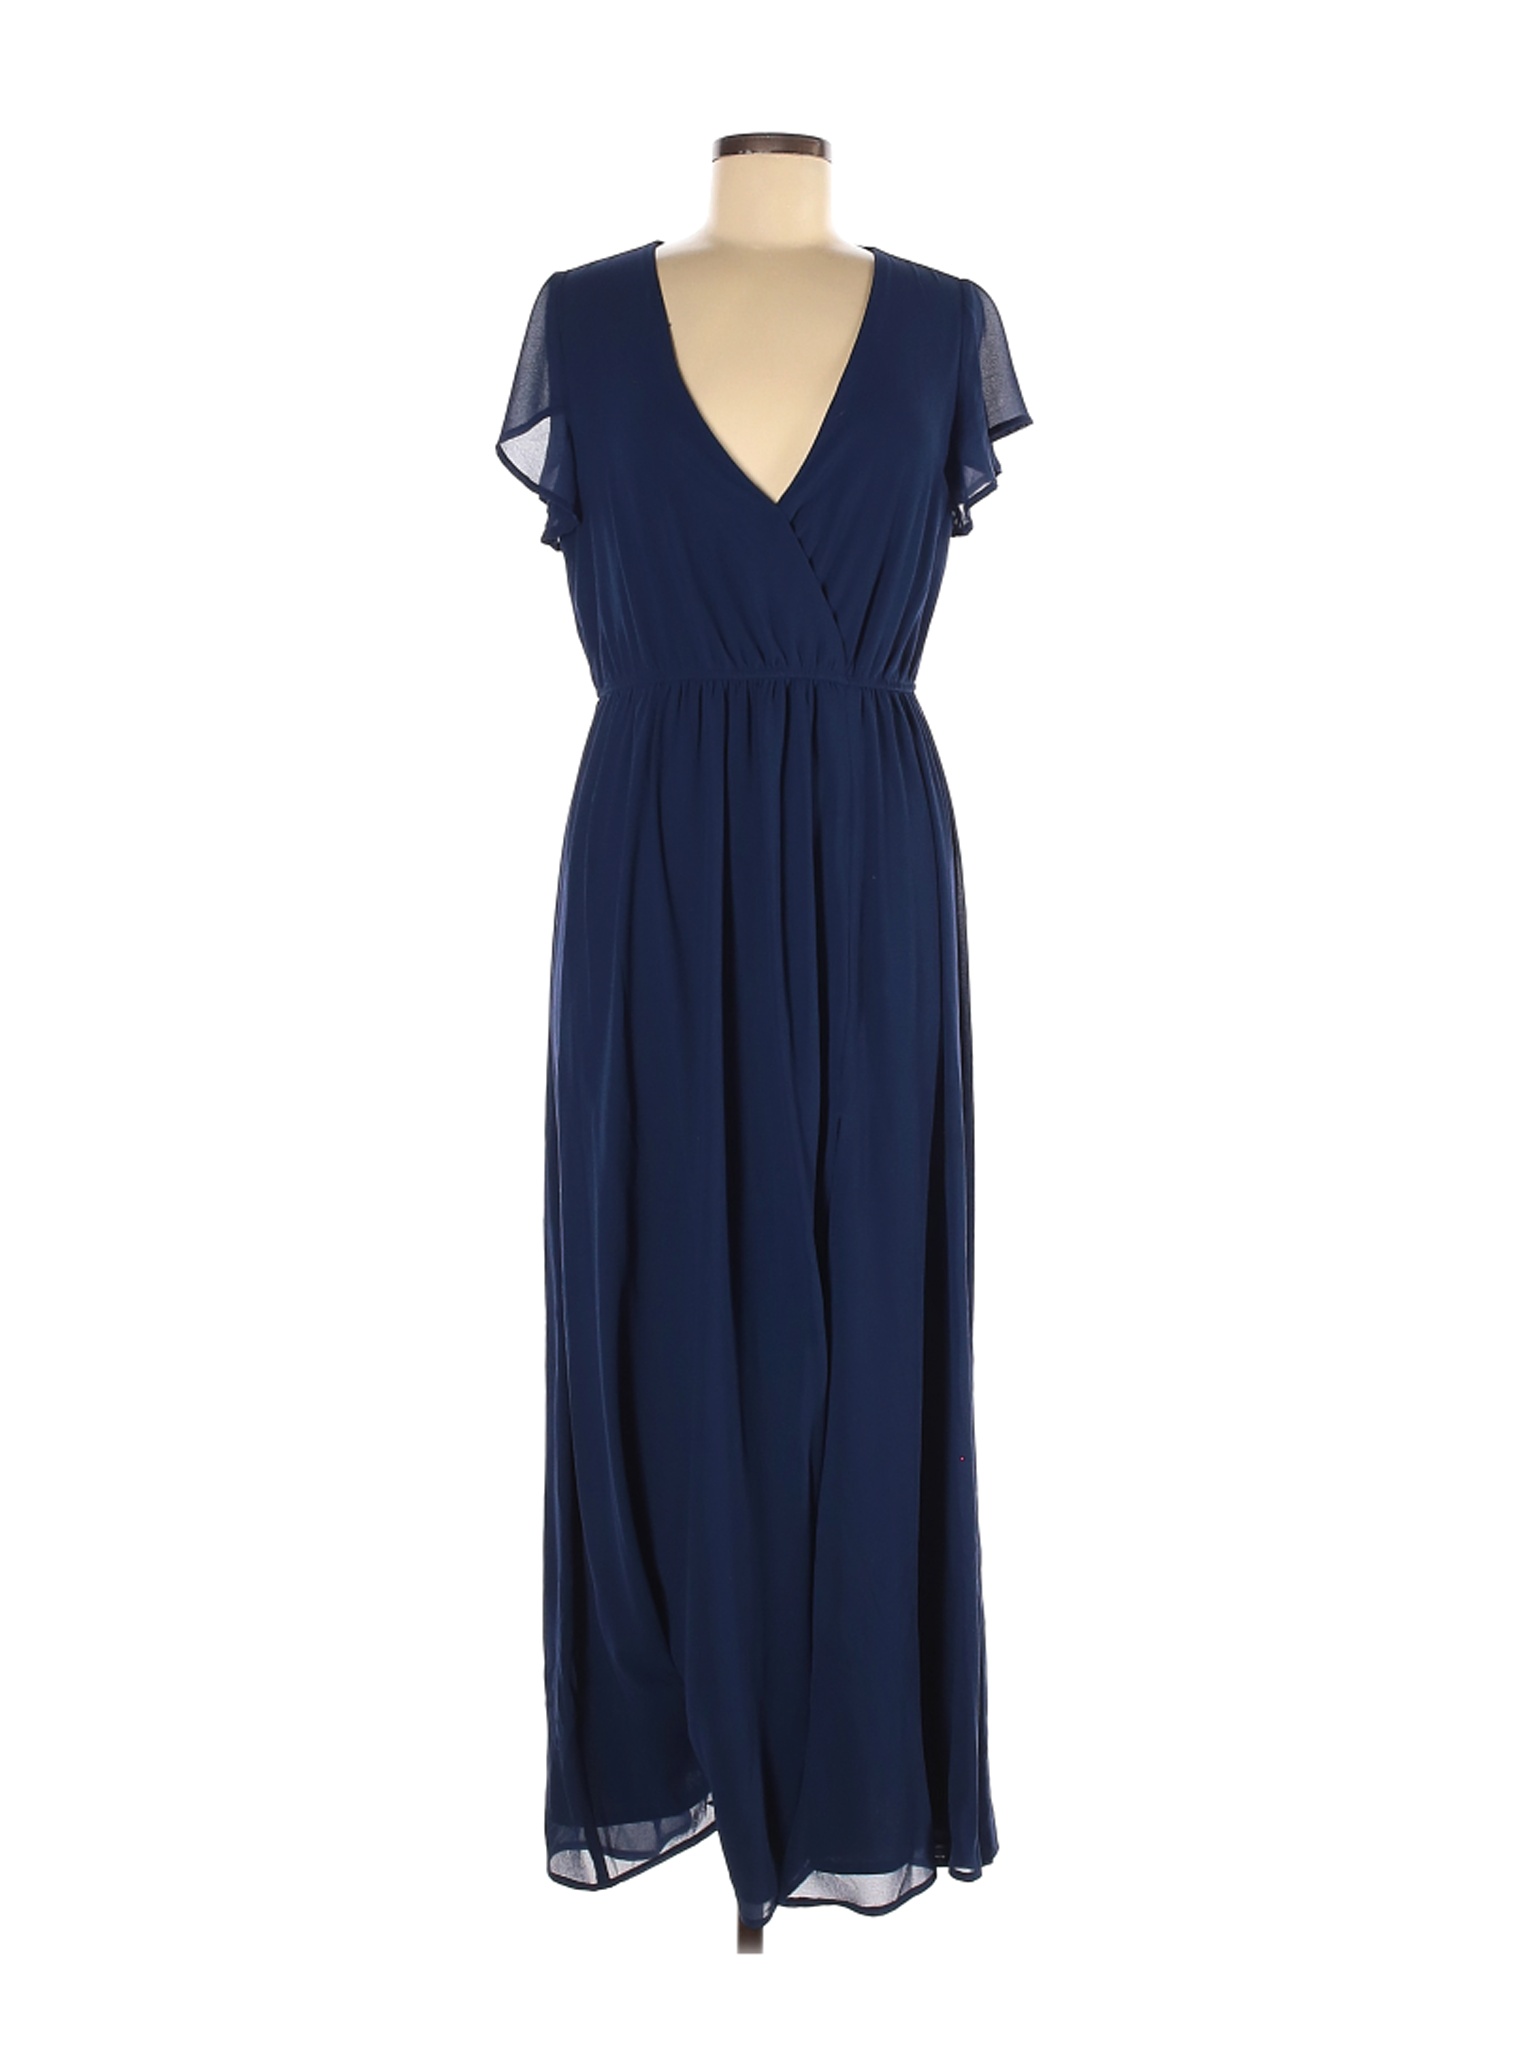 Lulu's Women Blue Casual Dress M | eBay